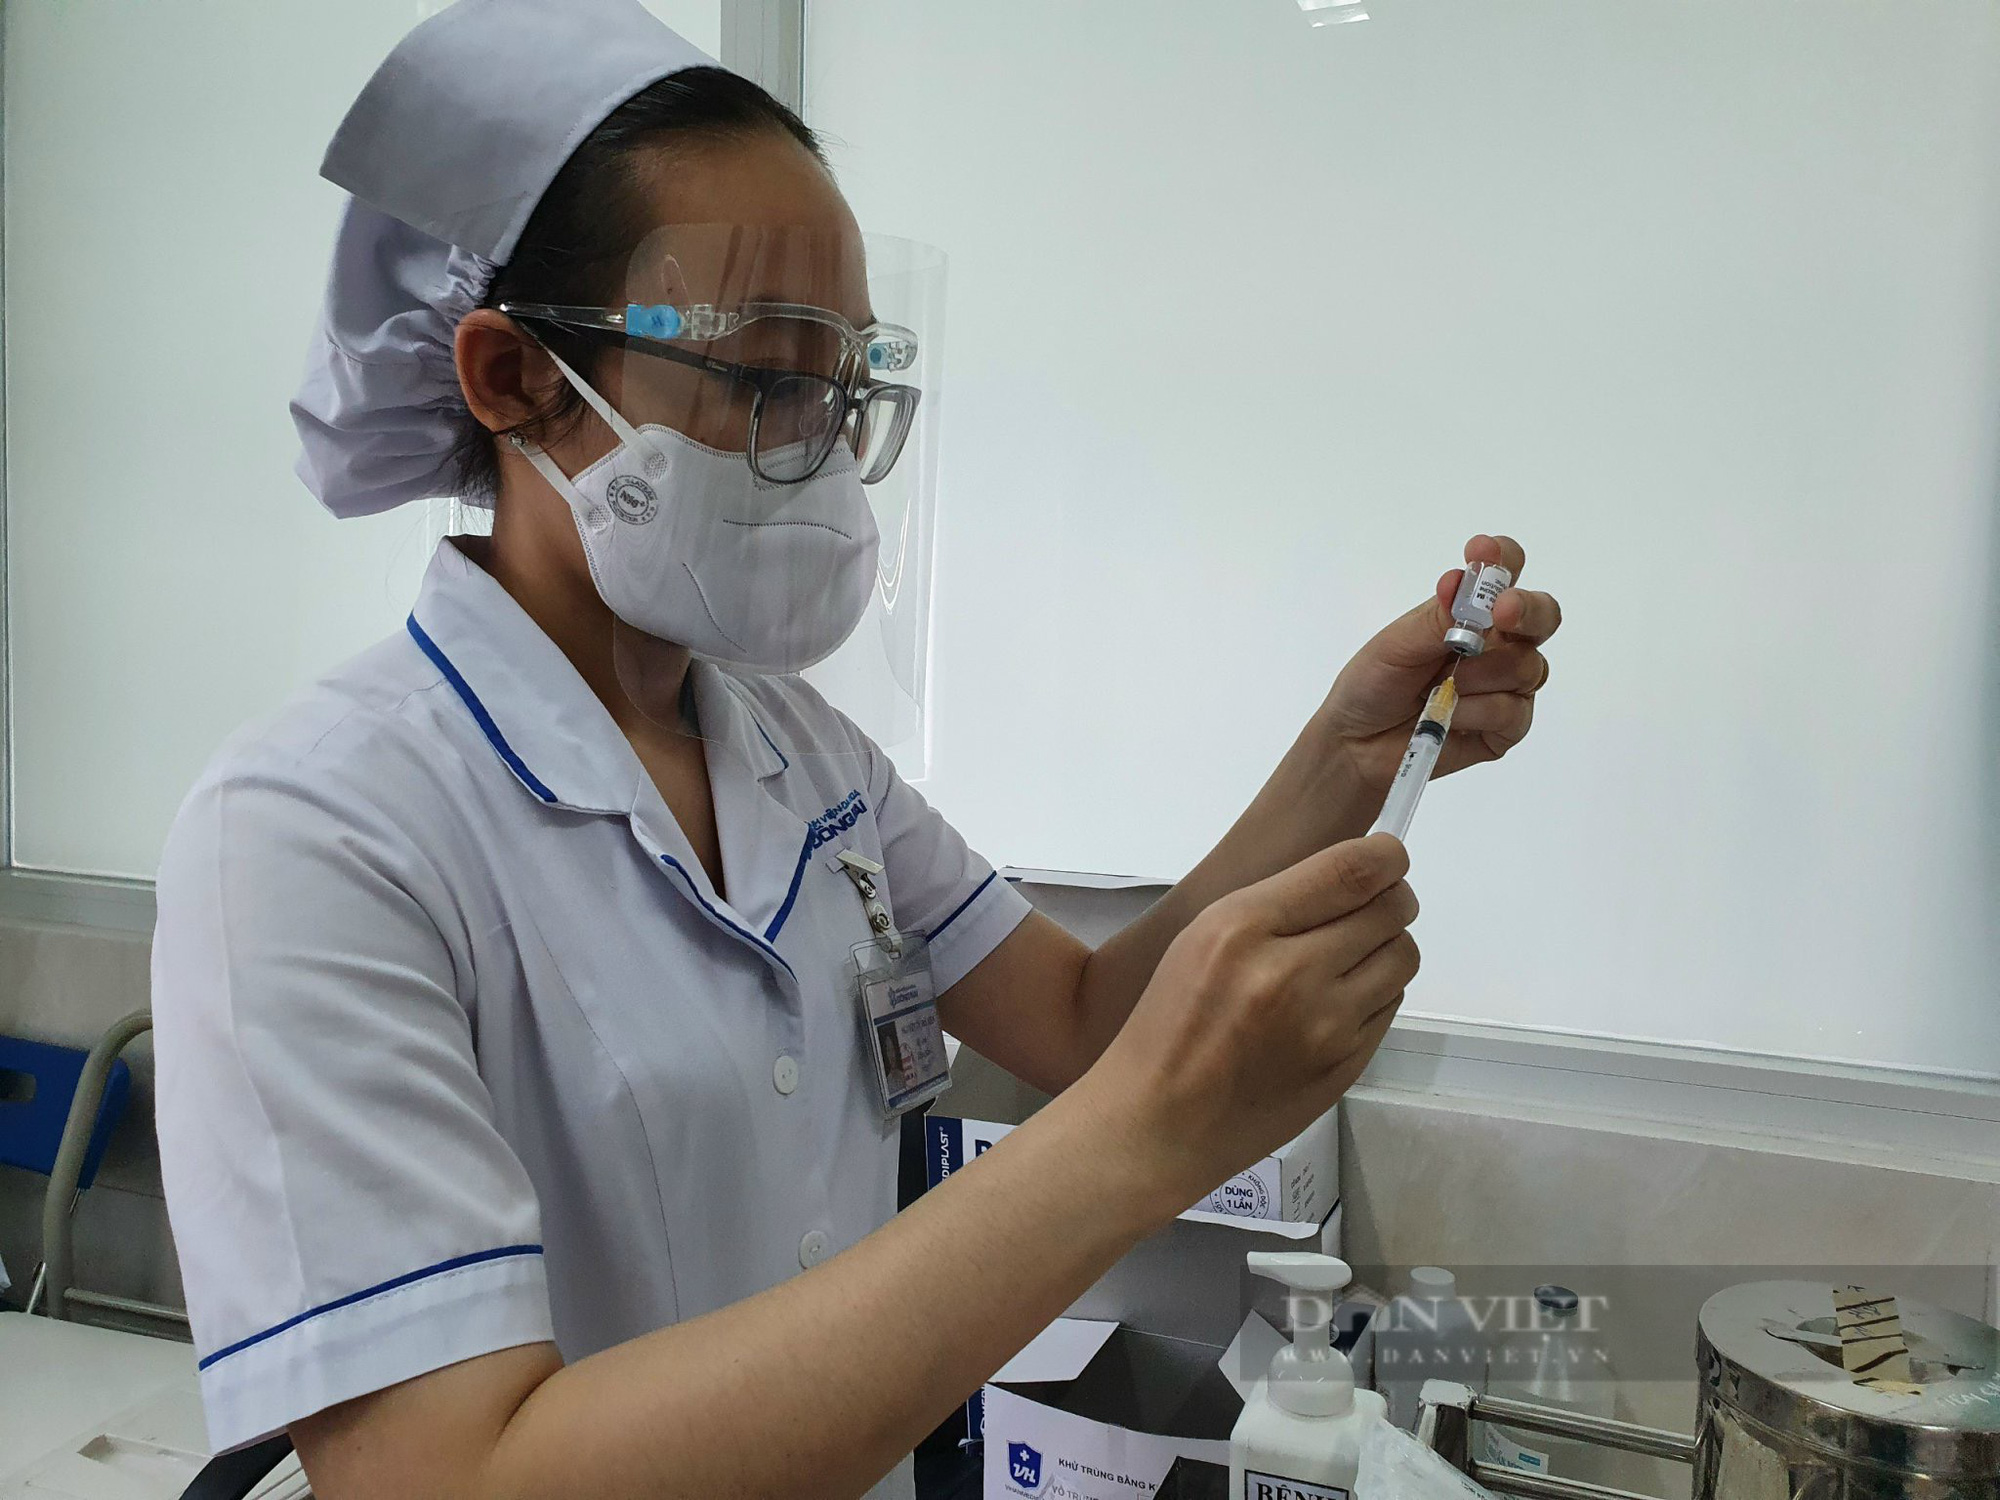 Đồng Nai 70% doanh nghiệp đăng ký 3 tại chỗ, phân bổ trên 140.000 liều vaccine để tiêm chủng cho công nhân - Ảnh 2.